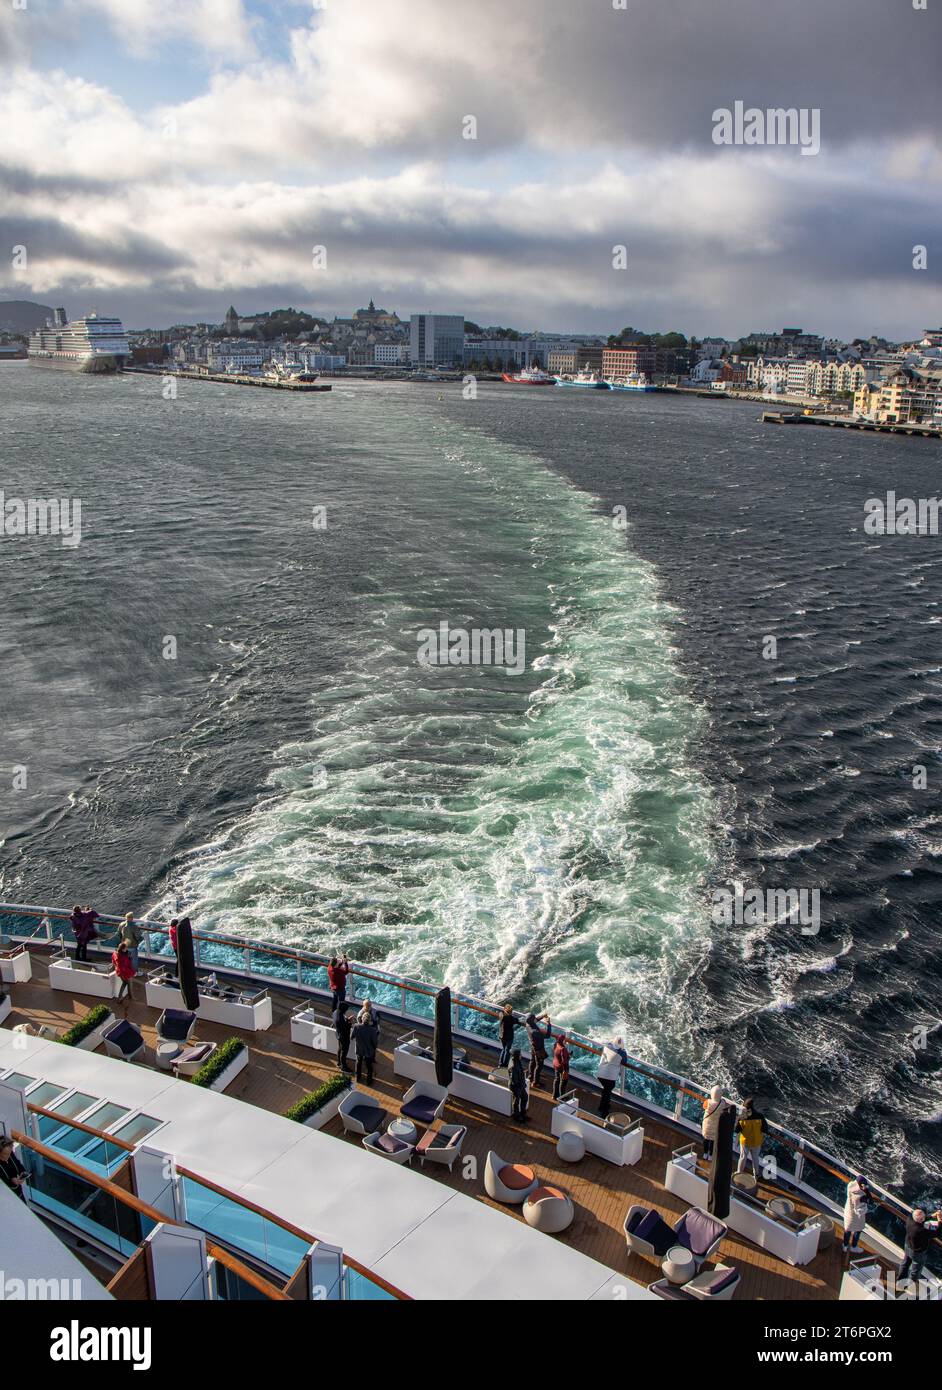 La ciudad de Alesund desde la salida de un crucero, estela de barco y cielo tormentoso. Turistas en la cubierta del barco tomando fotografías. Noruega Stock Photo